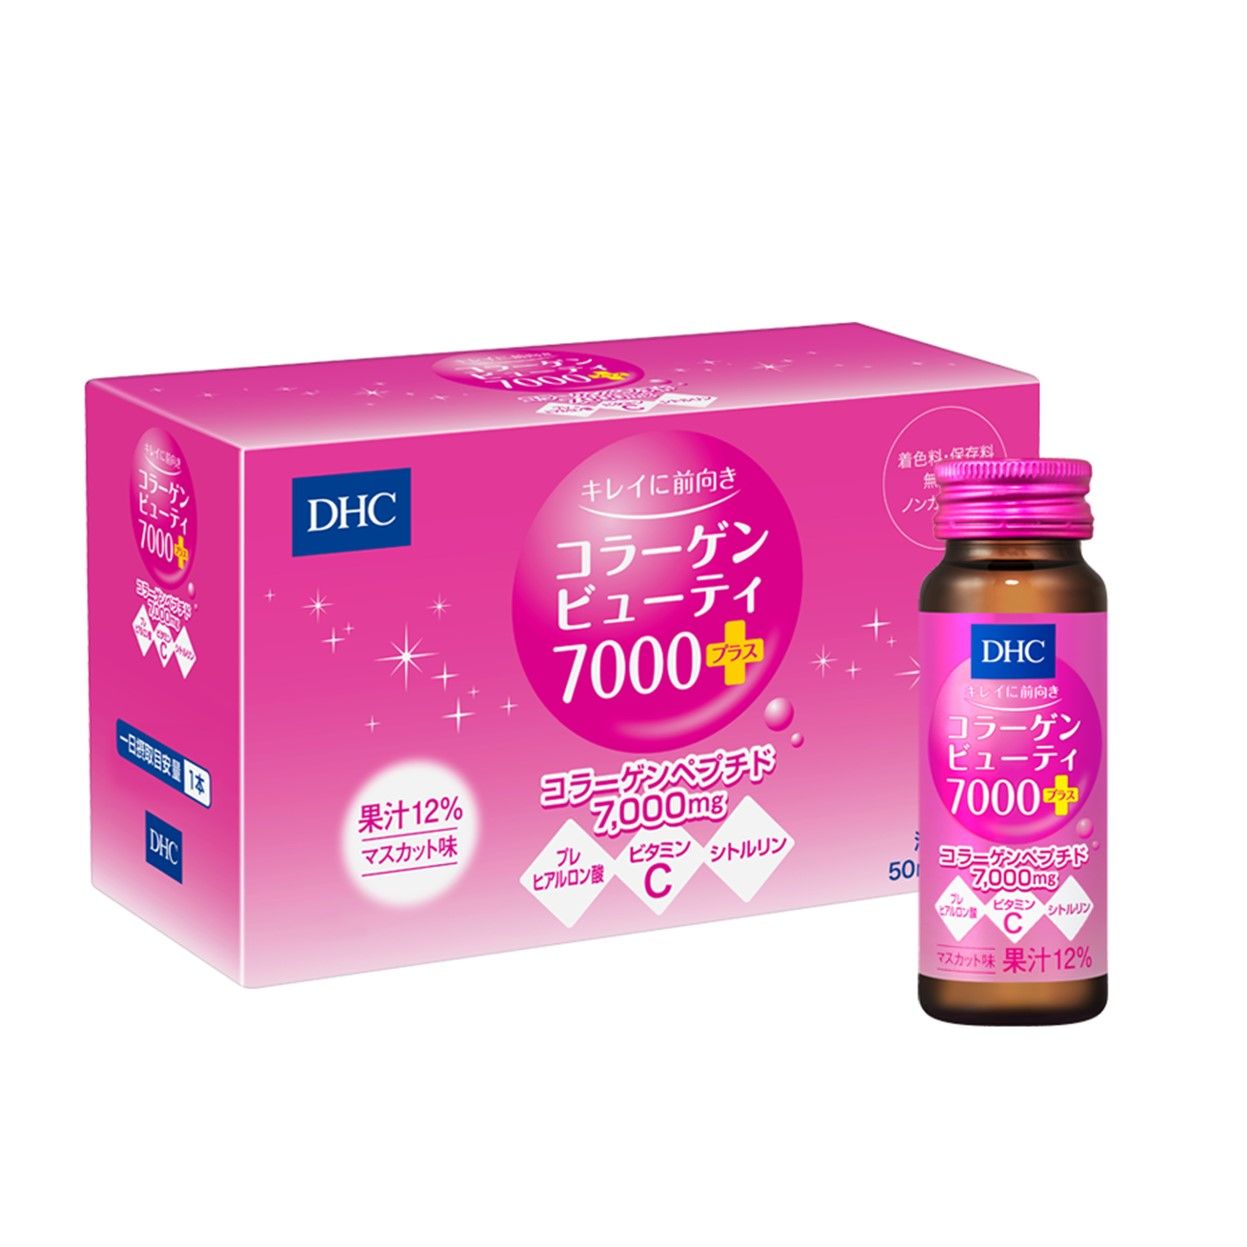  Nước DHC Collagen Beauty 7000+ Hộp 10 chai (50ml/Chai) 